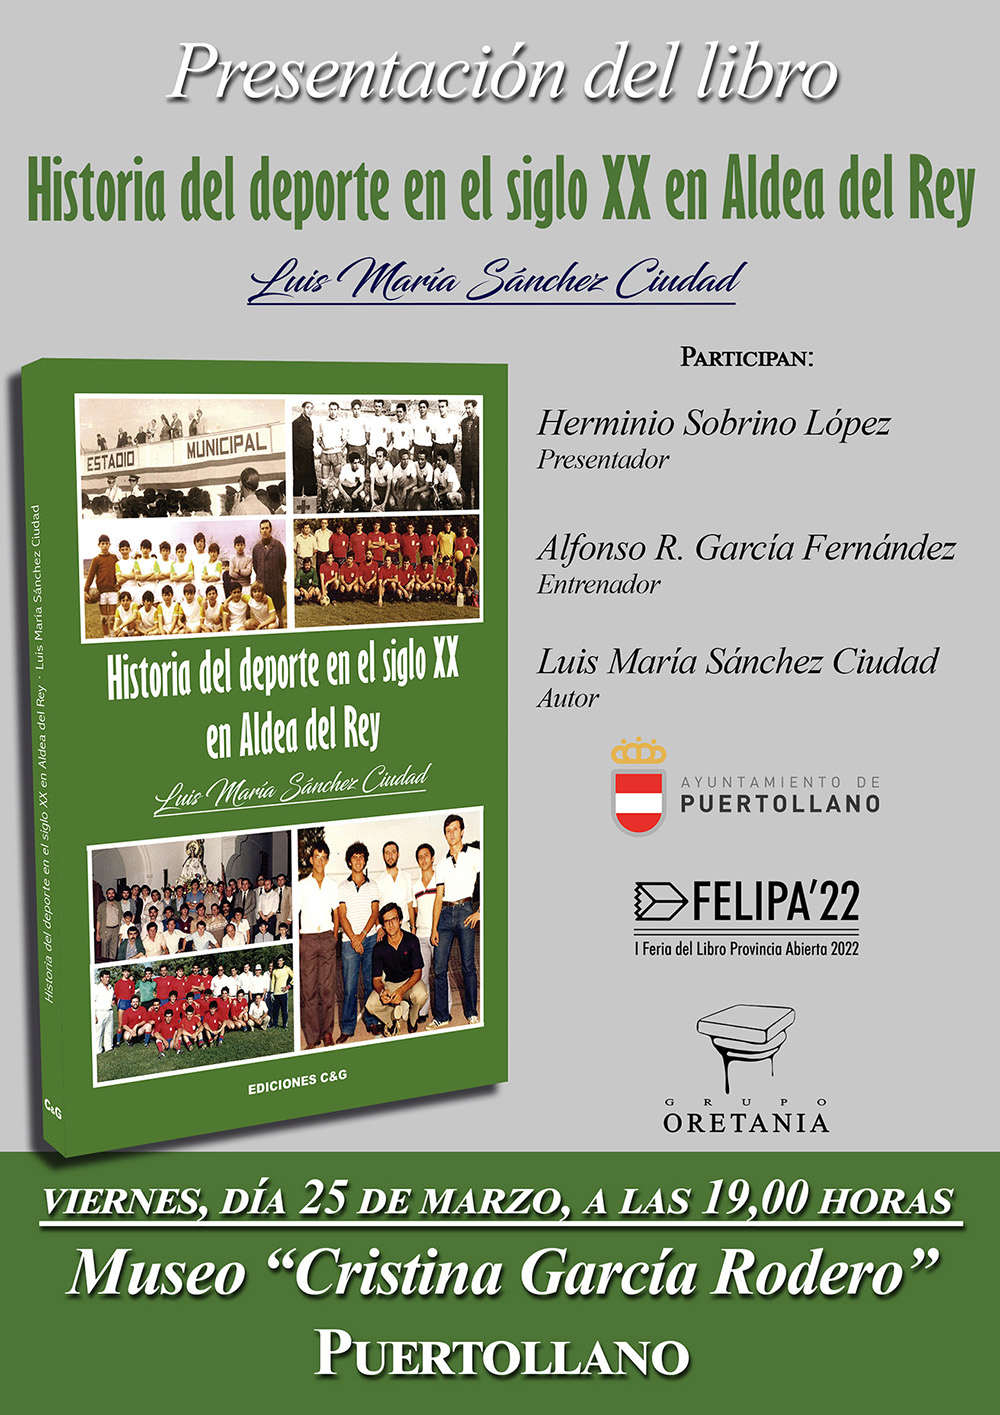 CARTEL de la presentación de la Historia del deporte en el siglo XX en Aldea del Rey, en Puertollano